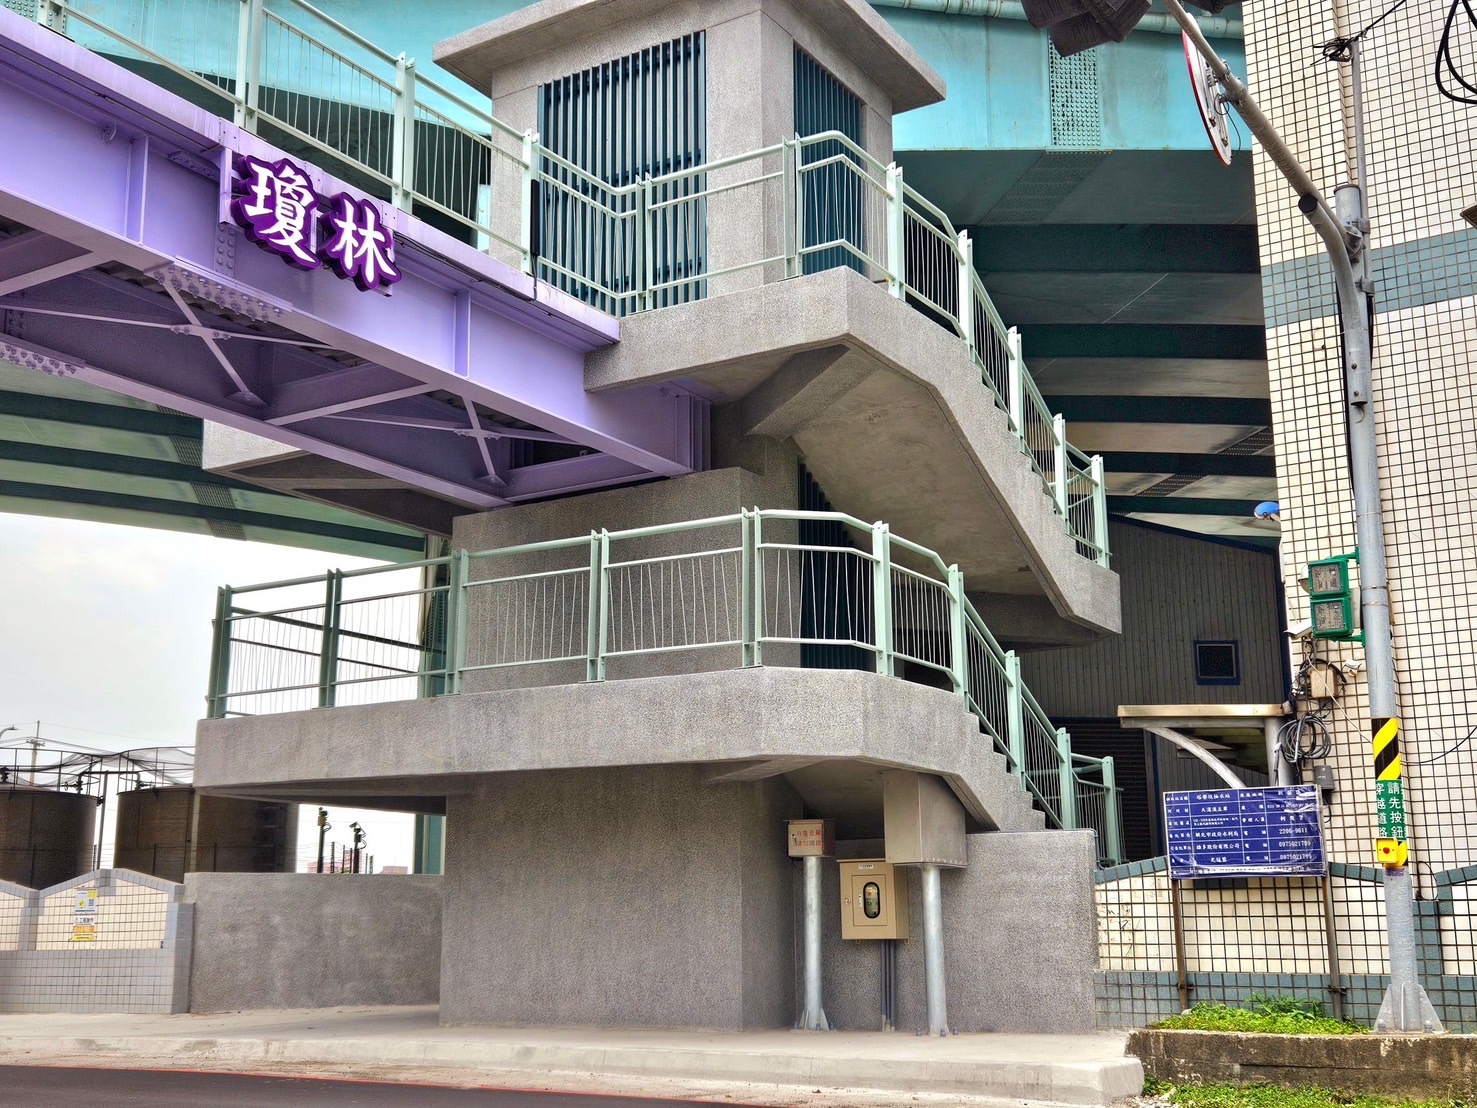 新北第14座水岸電梯，造福長者、孕婦及有行動不便需求的市民，能更安全便捷通往河濱公園